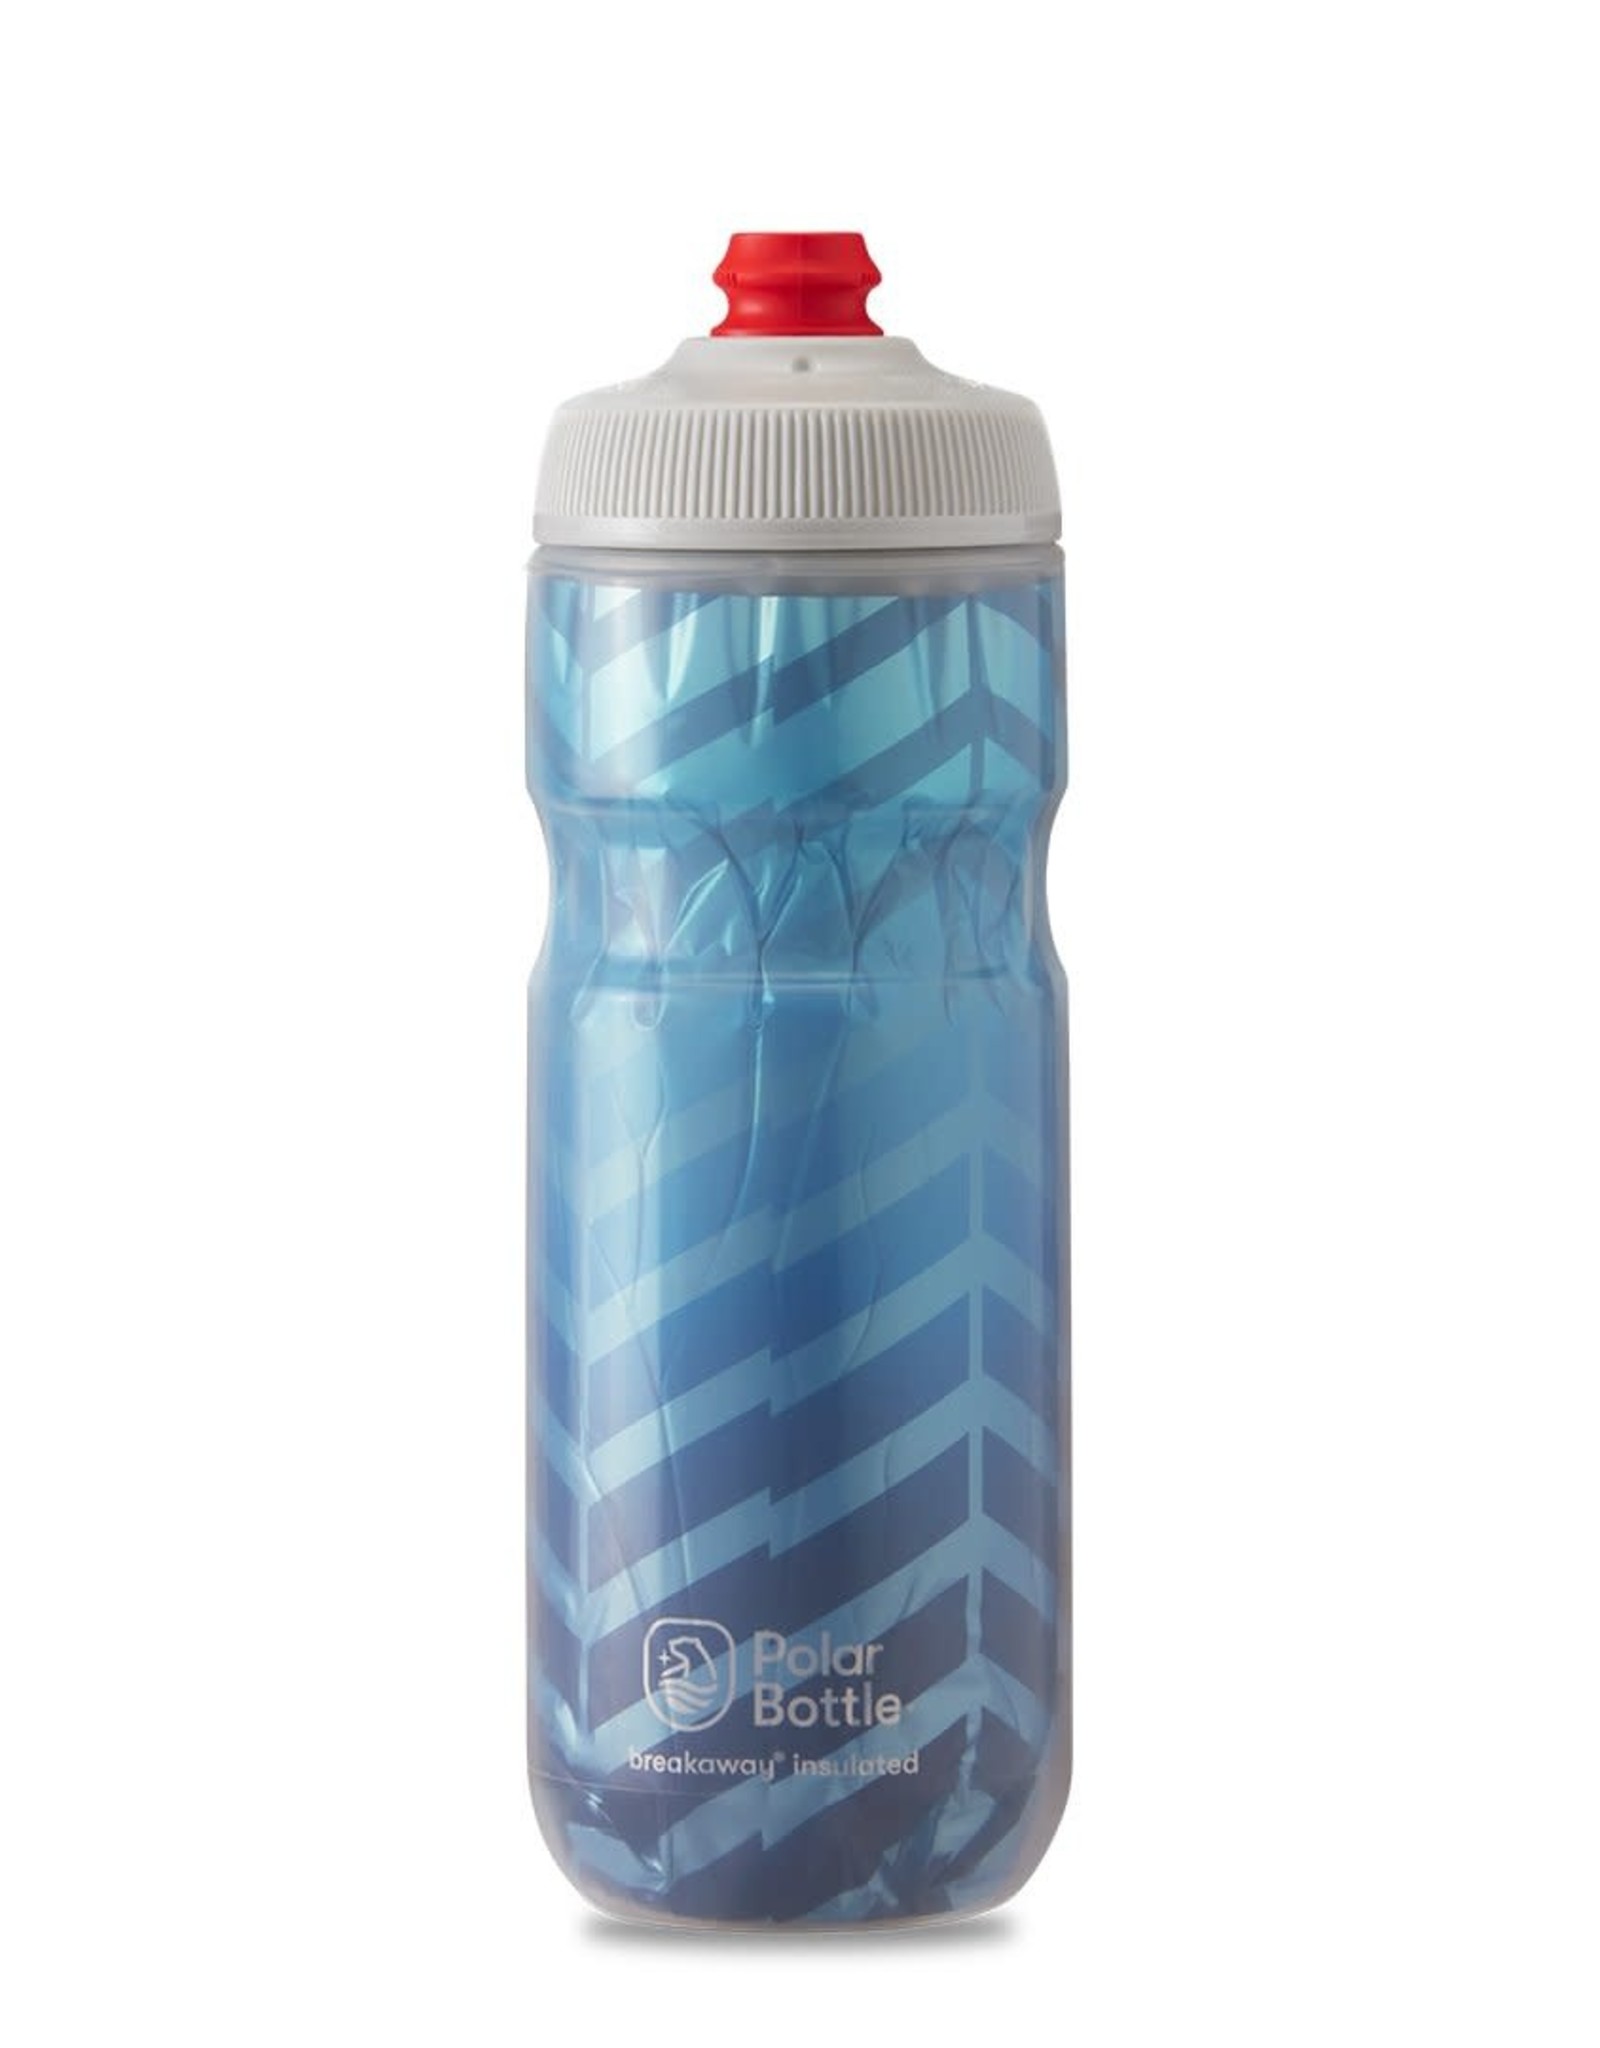 Polar Bottle Polar Breakaway Insulated